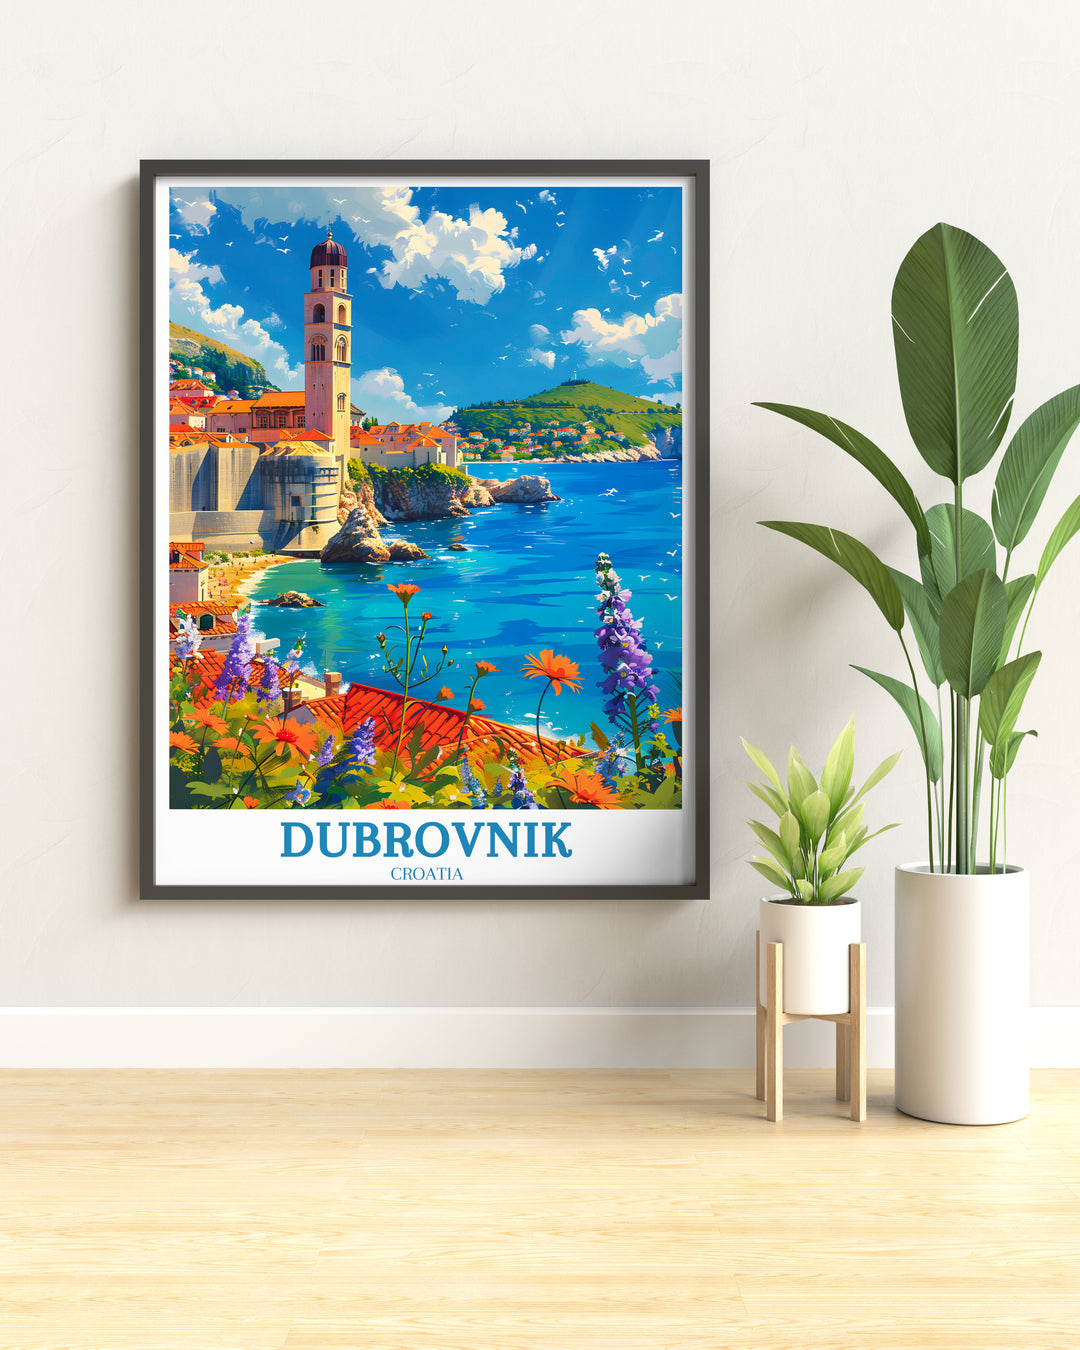 Dubrovnik Wall Art Delights - Murs de la vieille ville de Dubrovnik - Stradun - Affiche de voyage en Croatie 